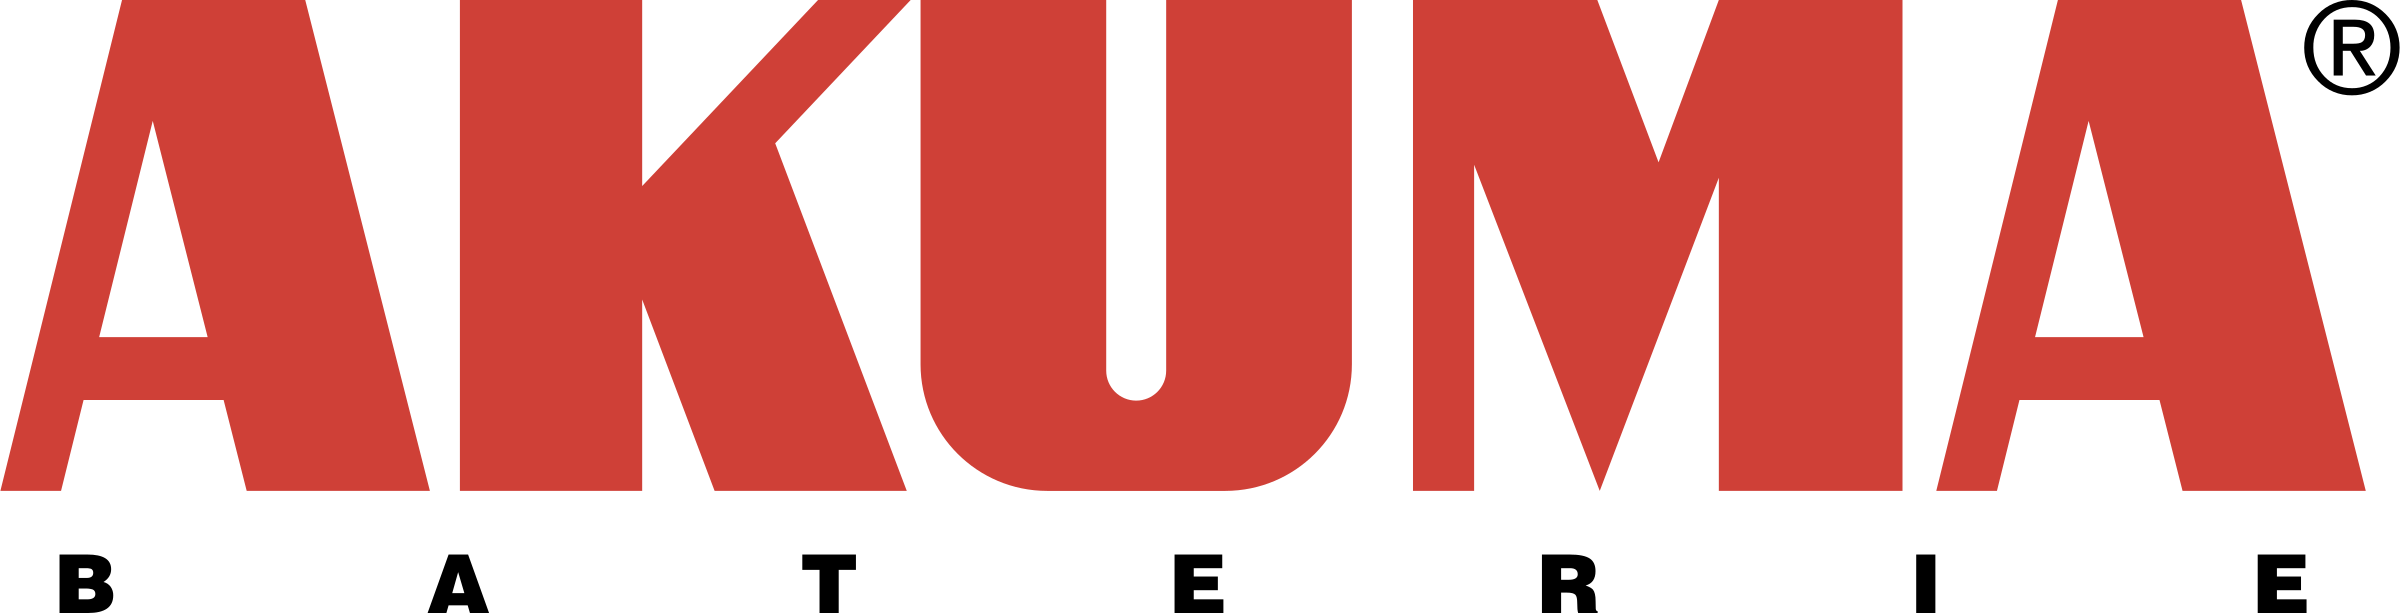 Akuma Logo Png Transparent Clipart (2400x613), Png Download